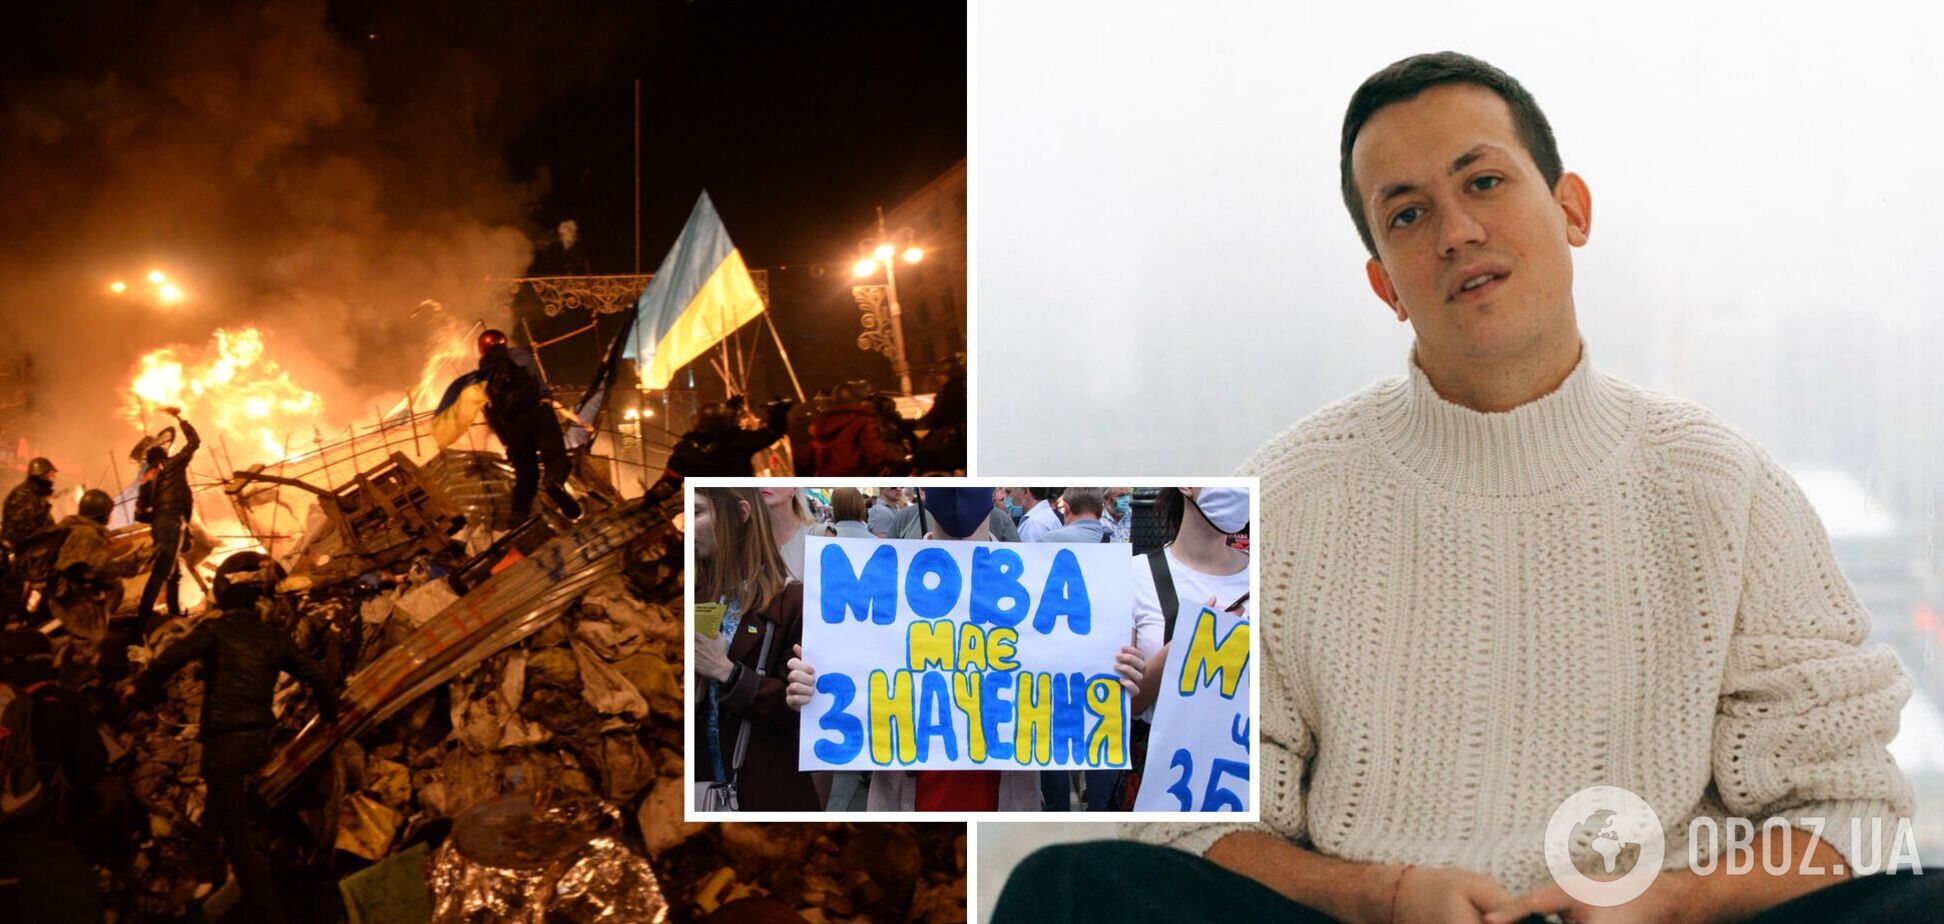 Олексій Дурнєв: мені соромно, що я висміював україномовних людей і тих, хто підтримував Майдан